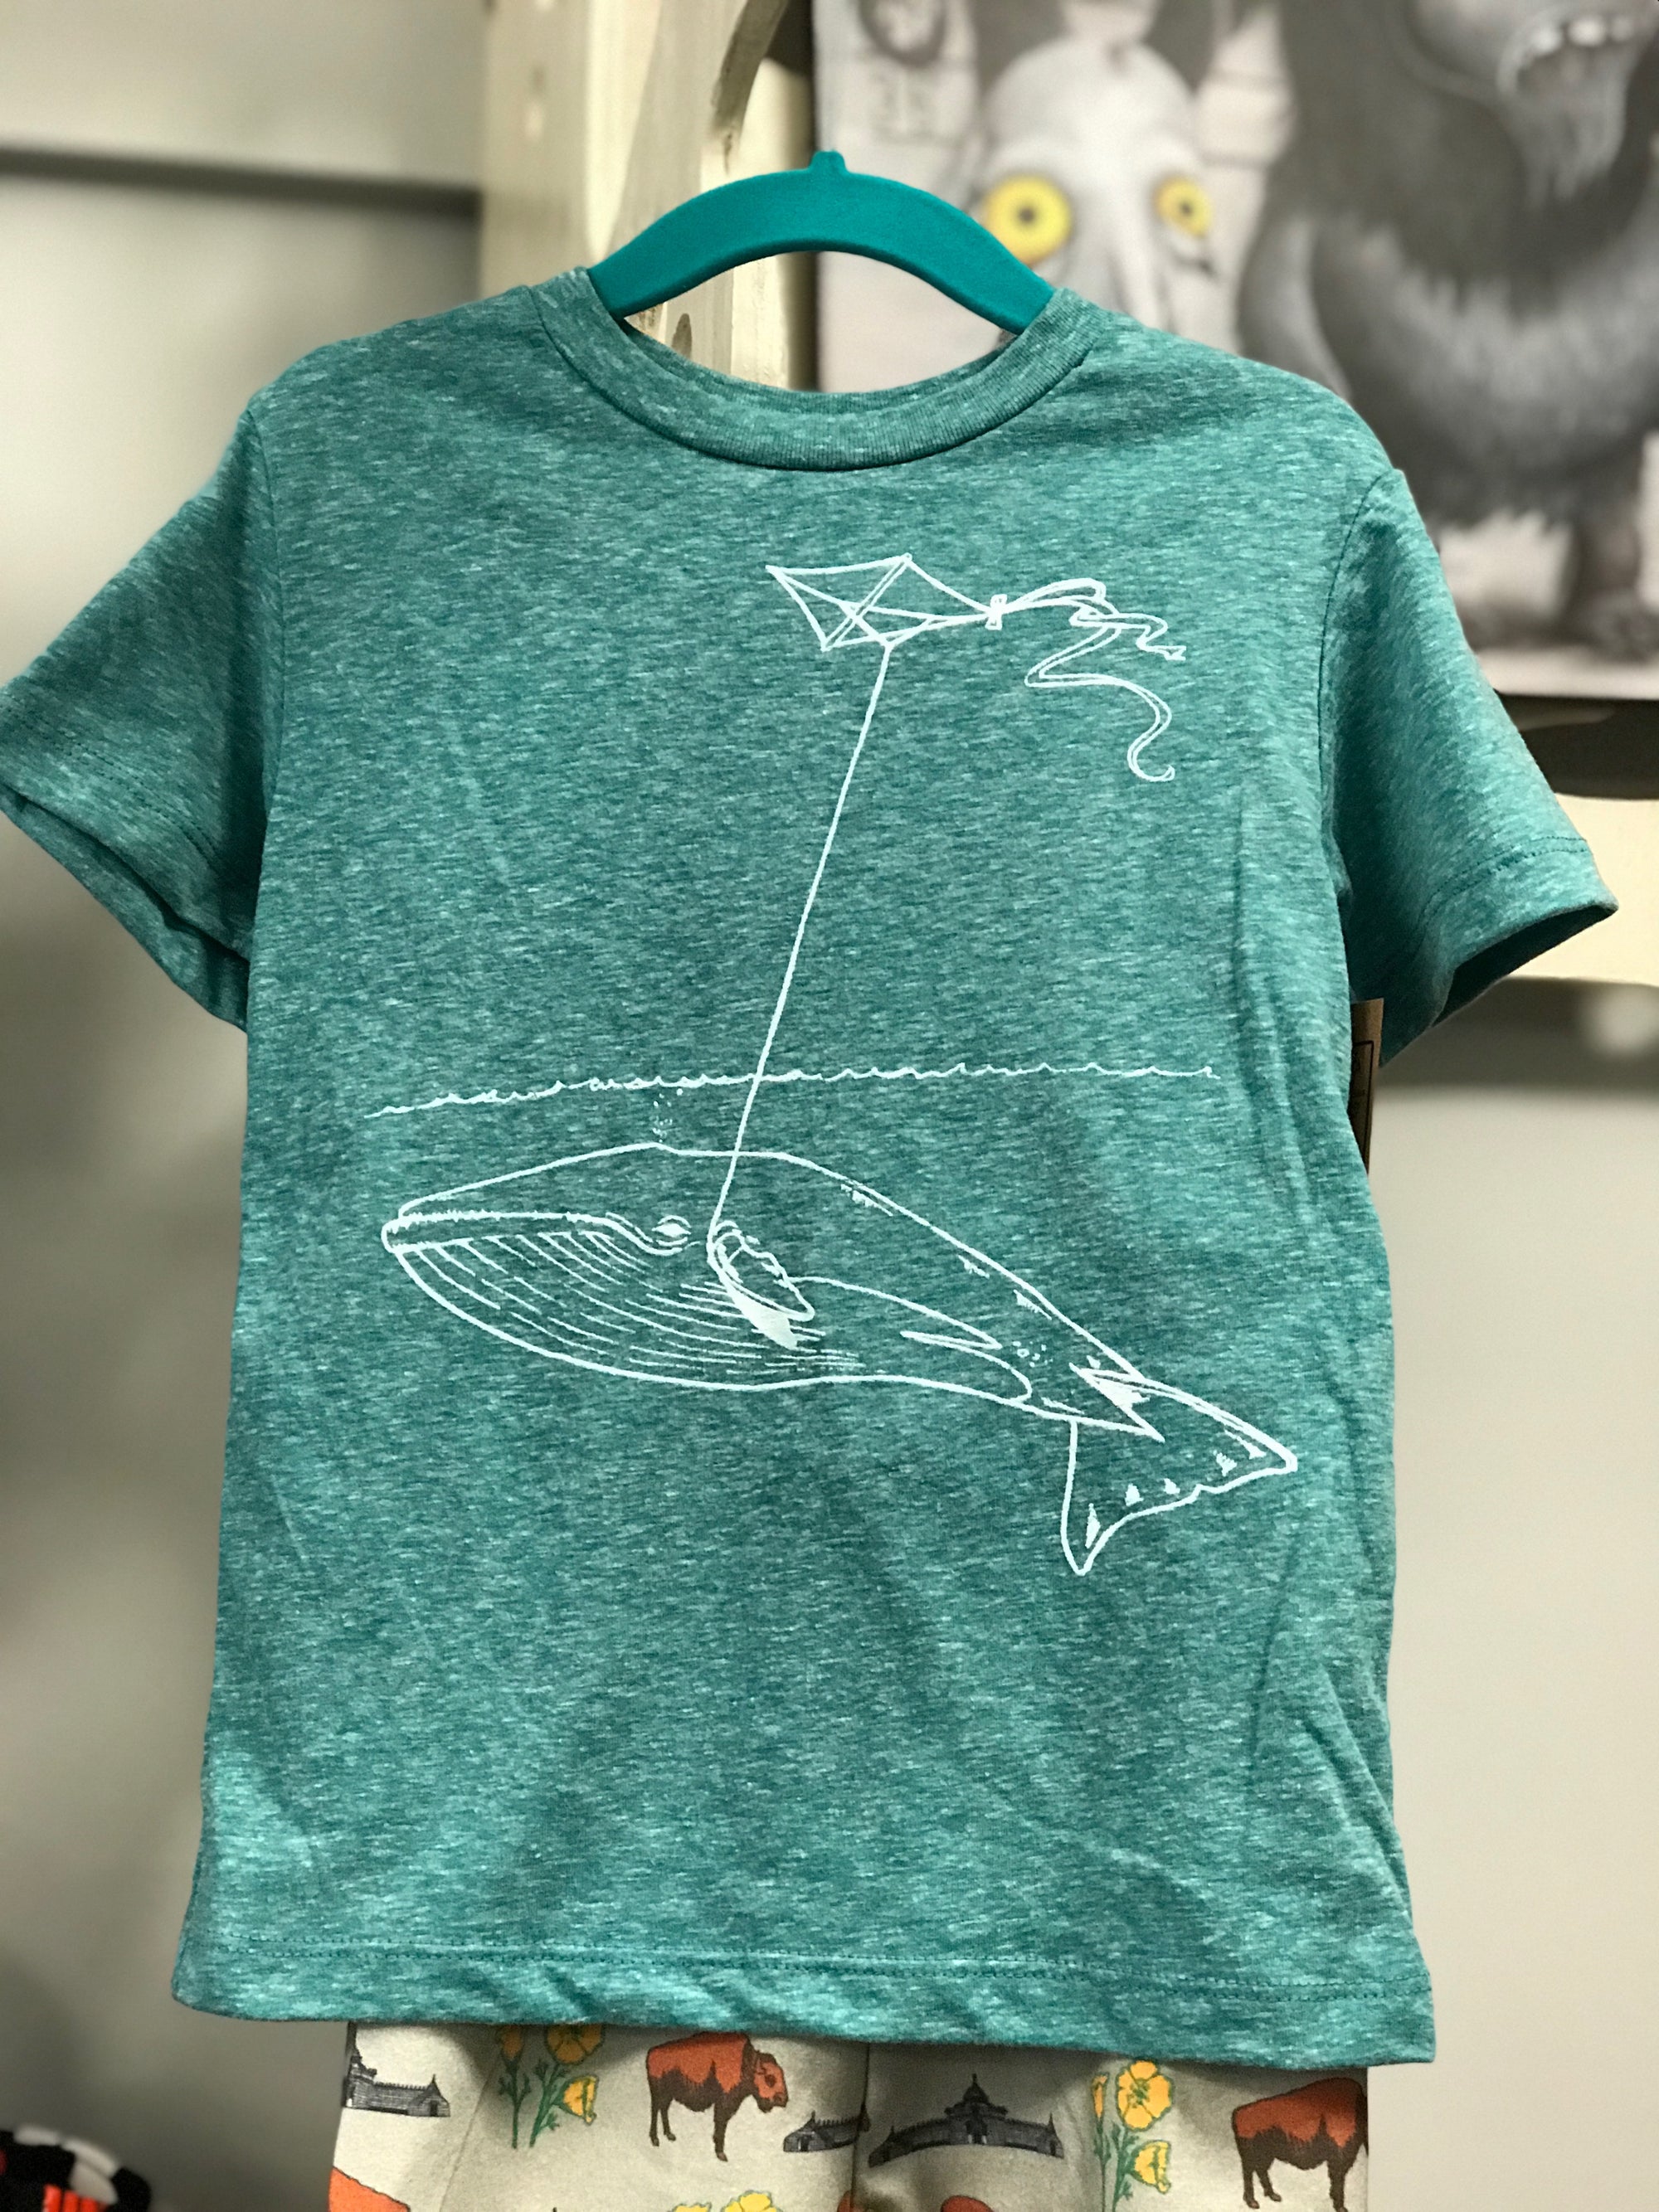 Toddler Shirt - Whale w/ Kite - Unisex Crew